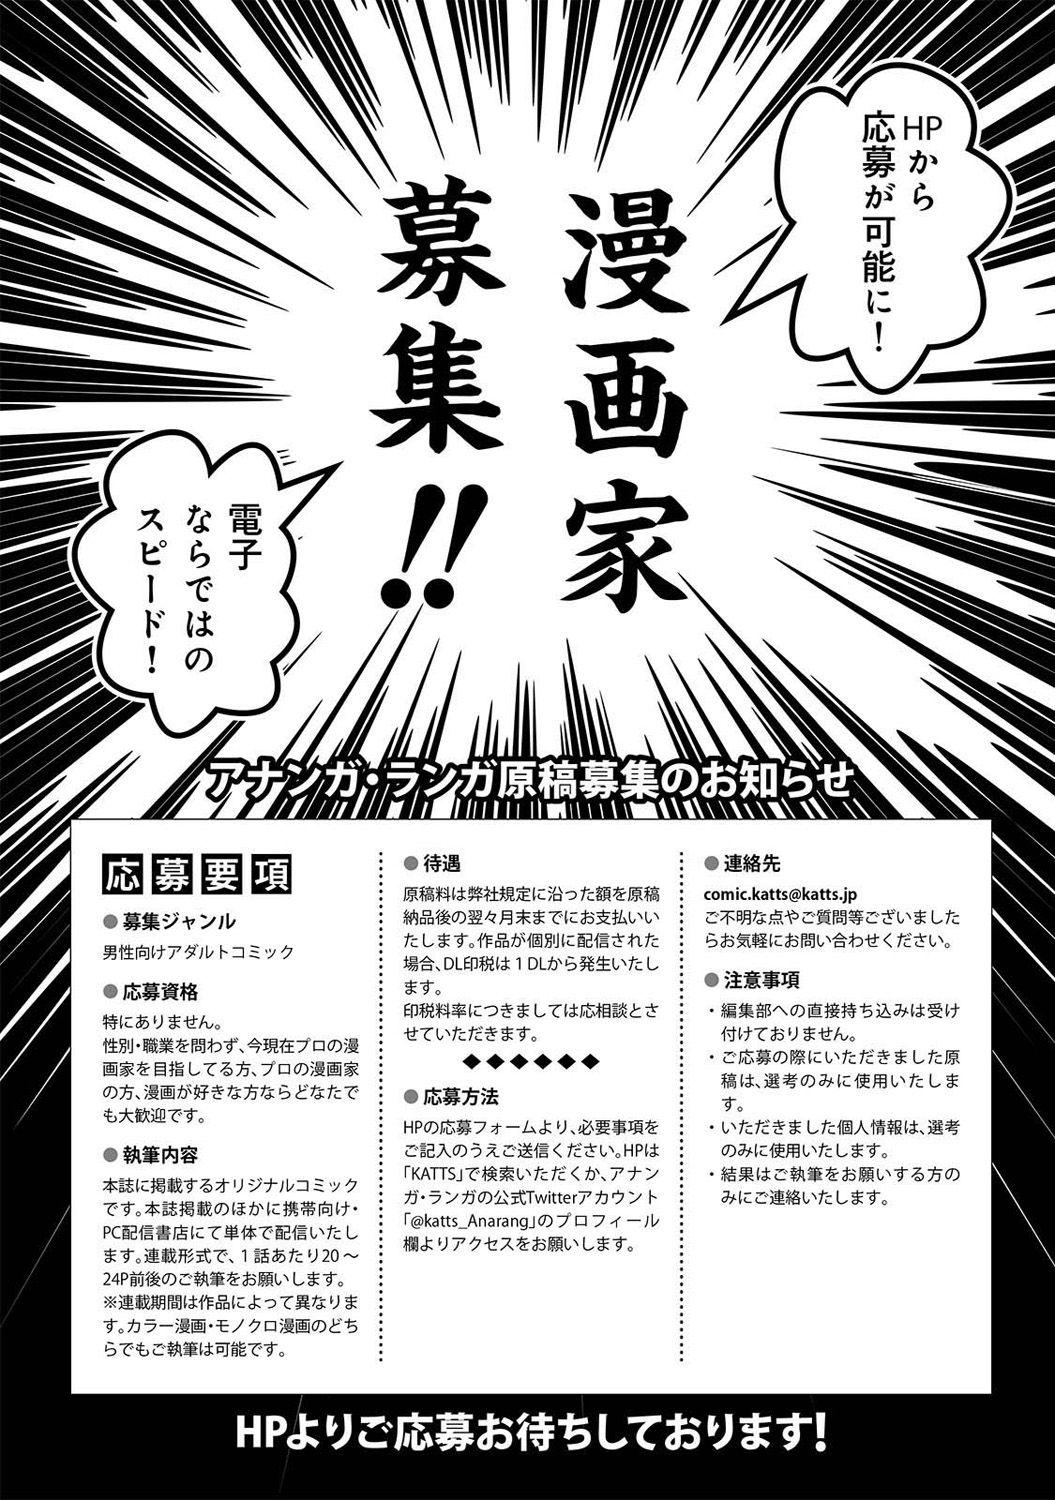 Rubdown COMIC Ananga Ranga Vol. 23 Anime - Page 276